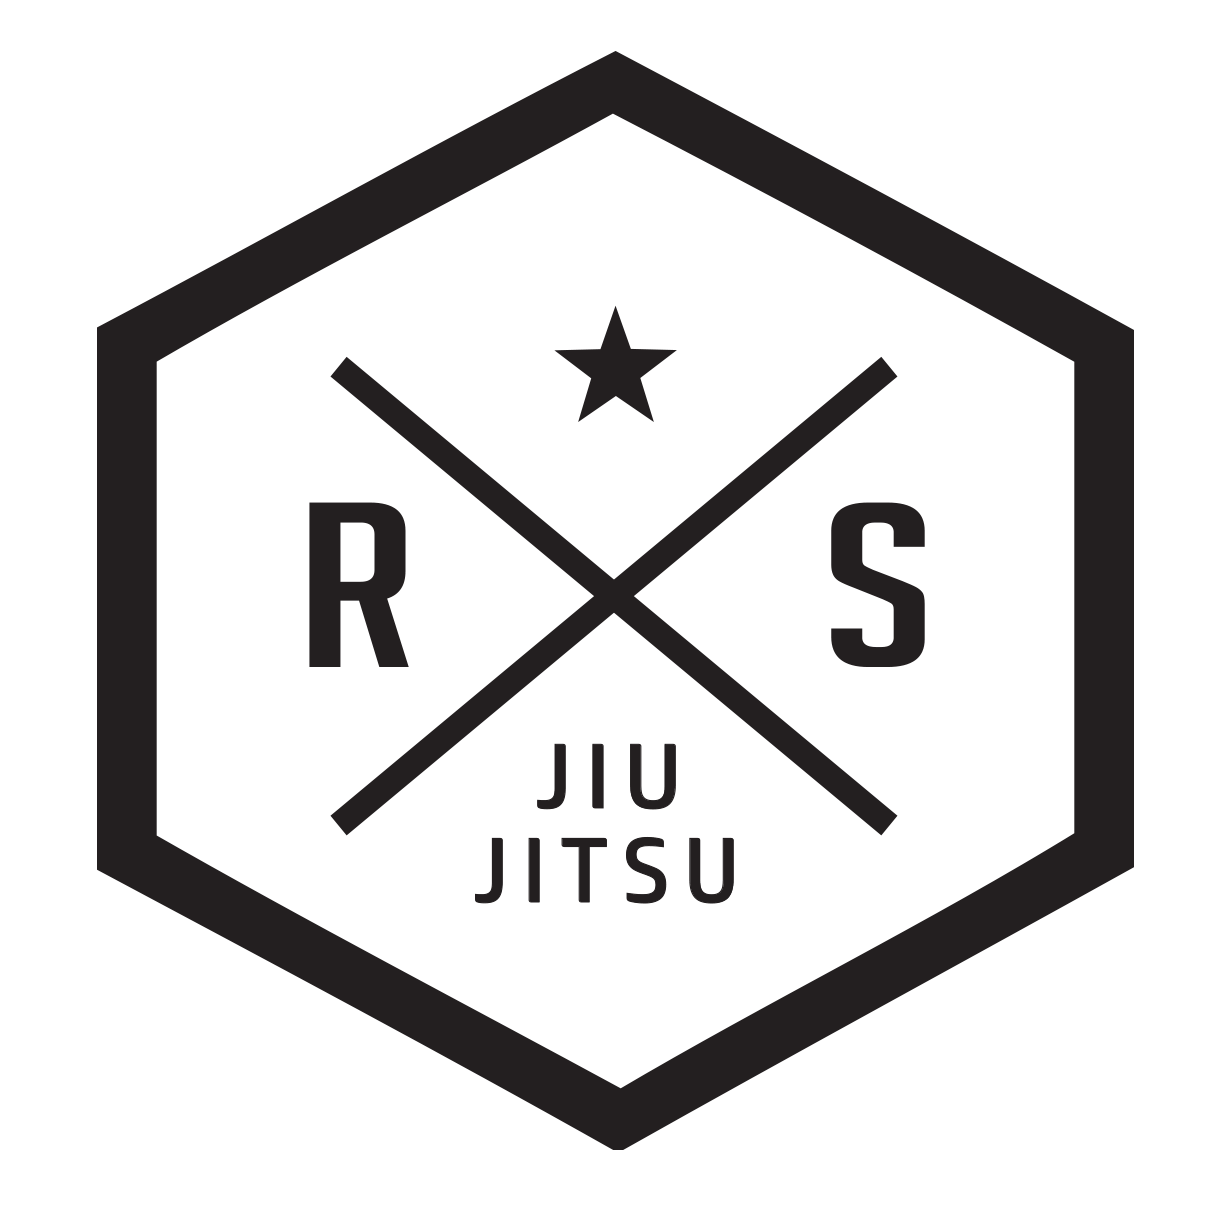 ROLLSTAR Jiu Jitsu Academy